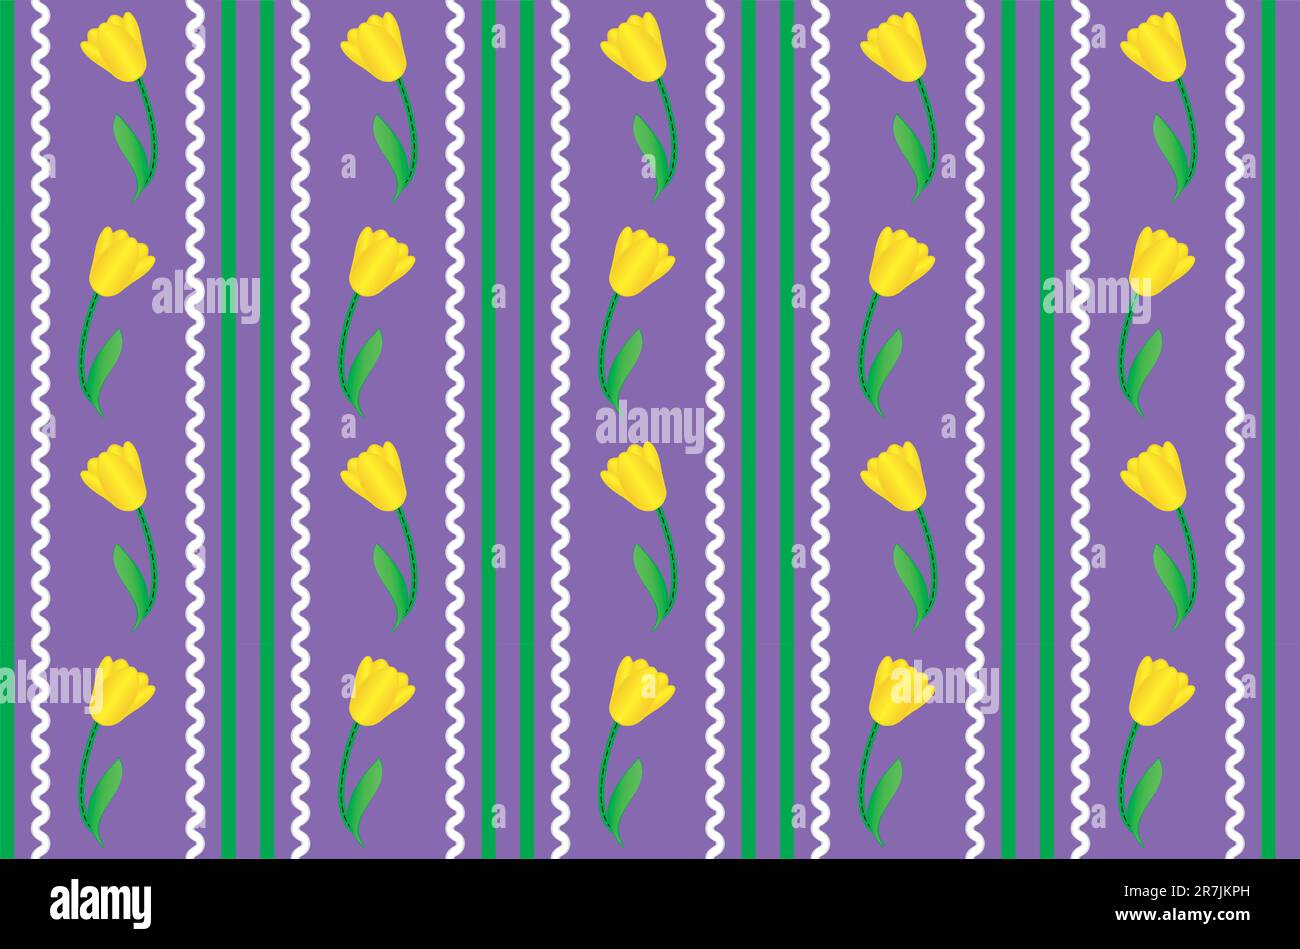 Eps8 vettoriale. Sfondo viola con tulipani gialli accentuati da strisce verdi, rick rac bianco e cuciture trapuntate. Illustrazione Vettoriale